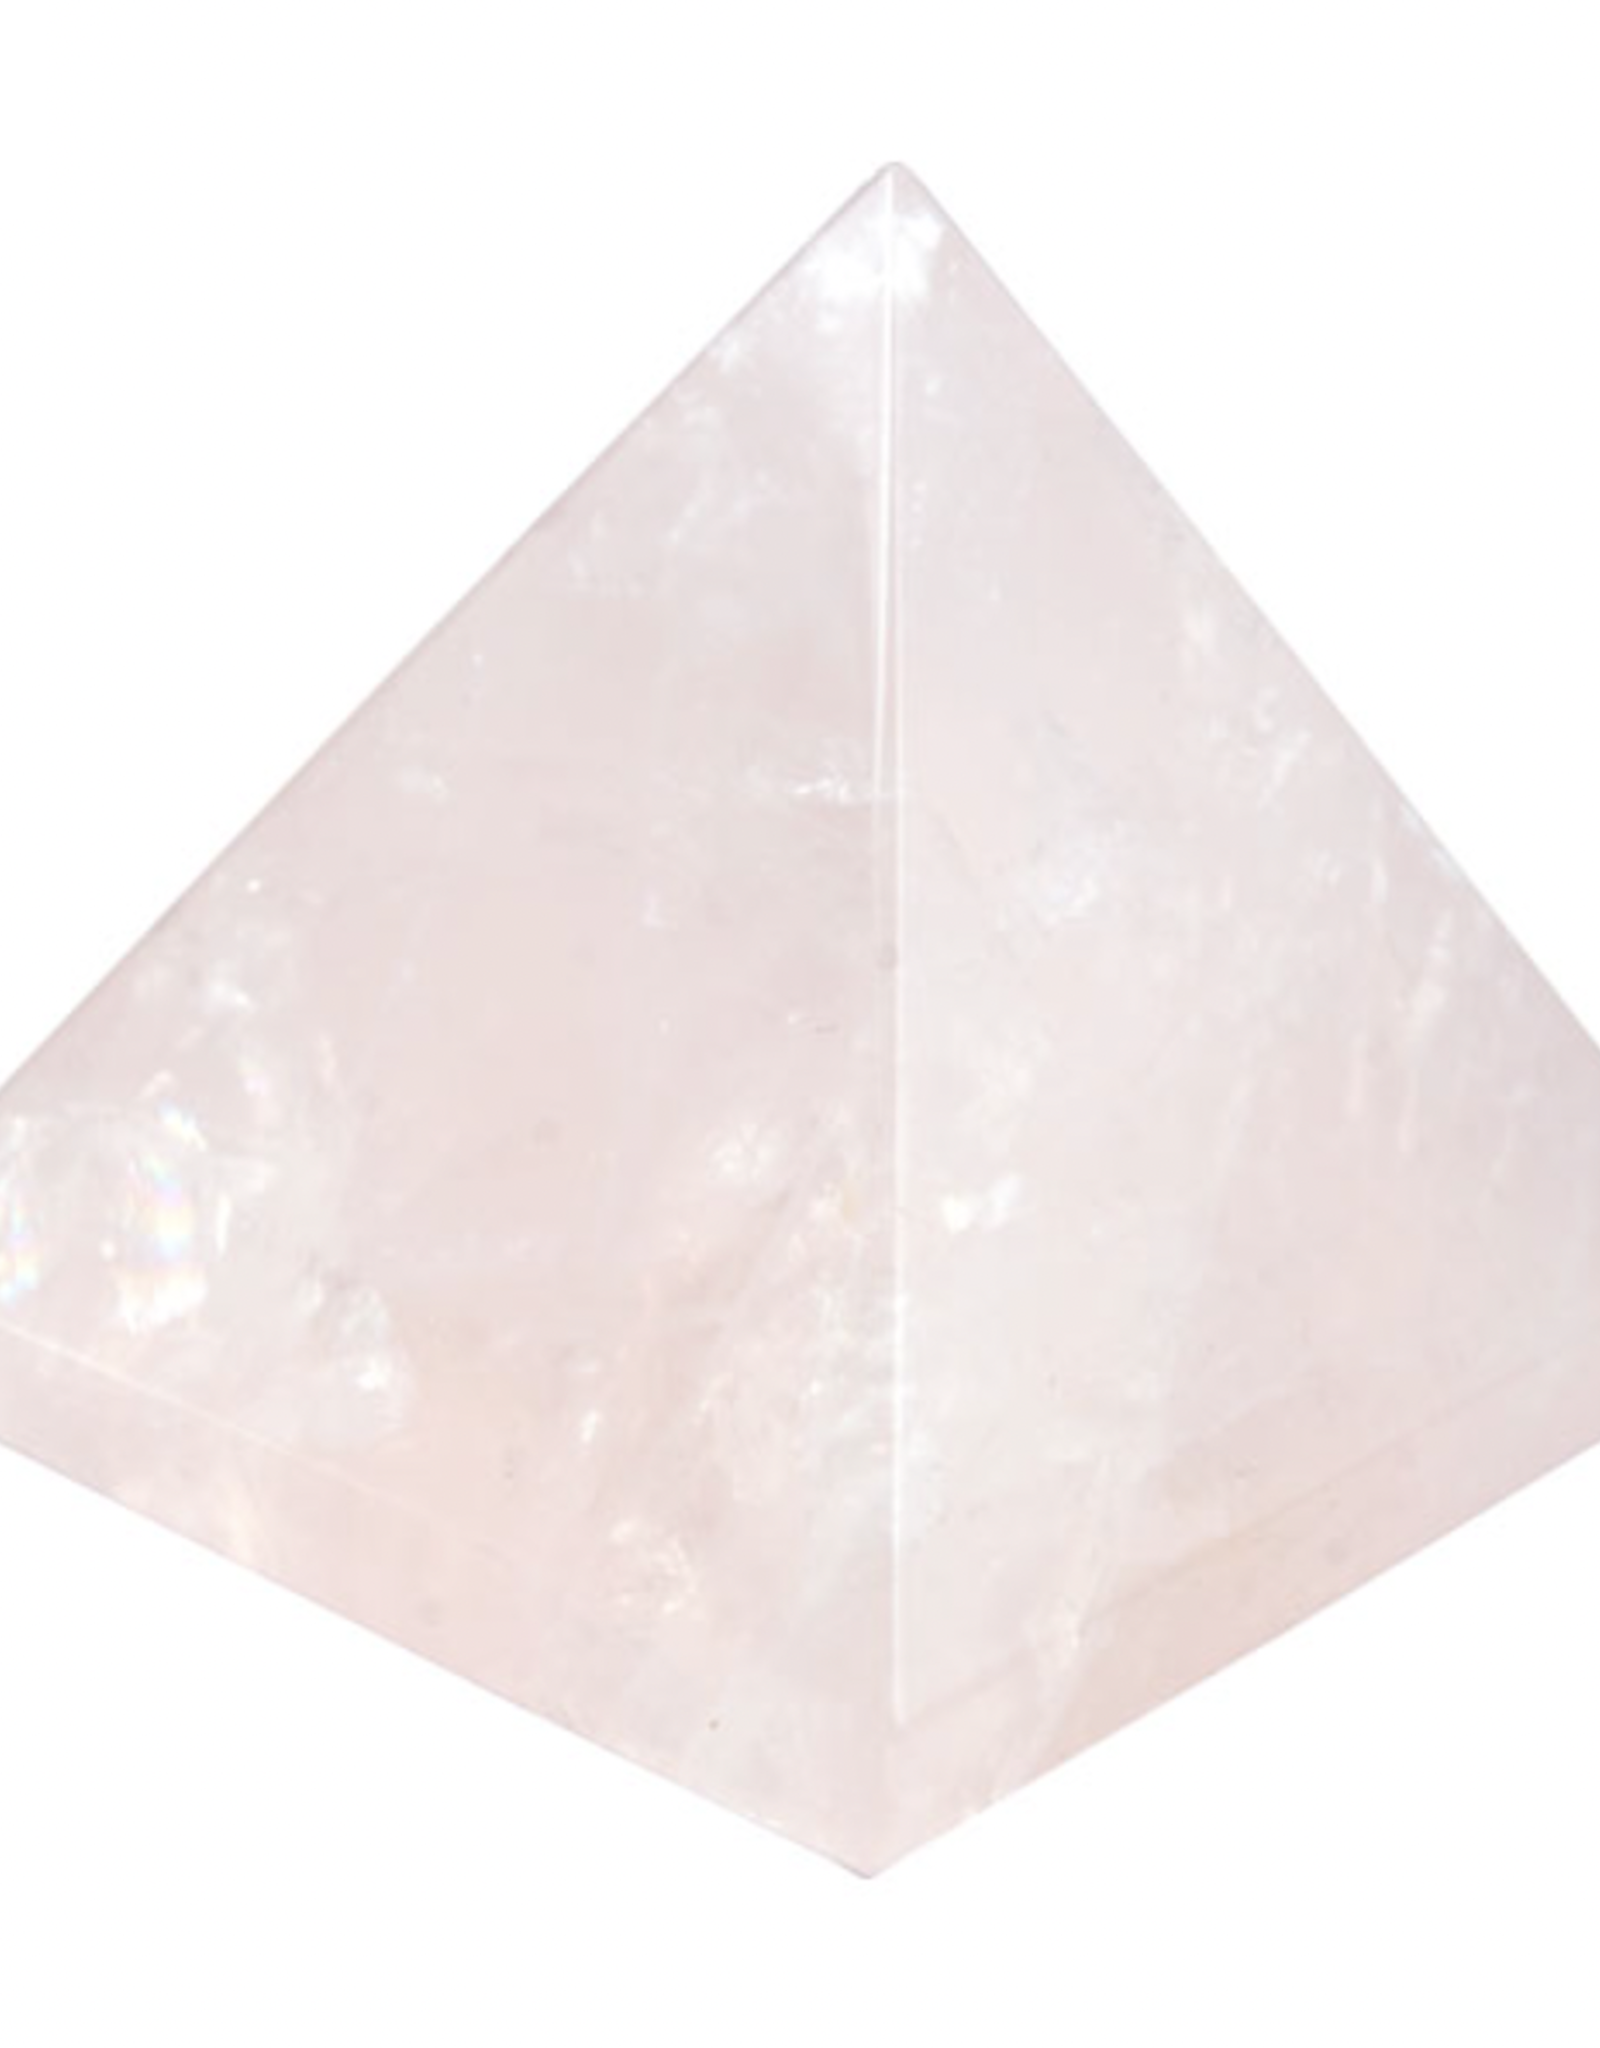 Pyramid - Rose Quartz (~40mm)